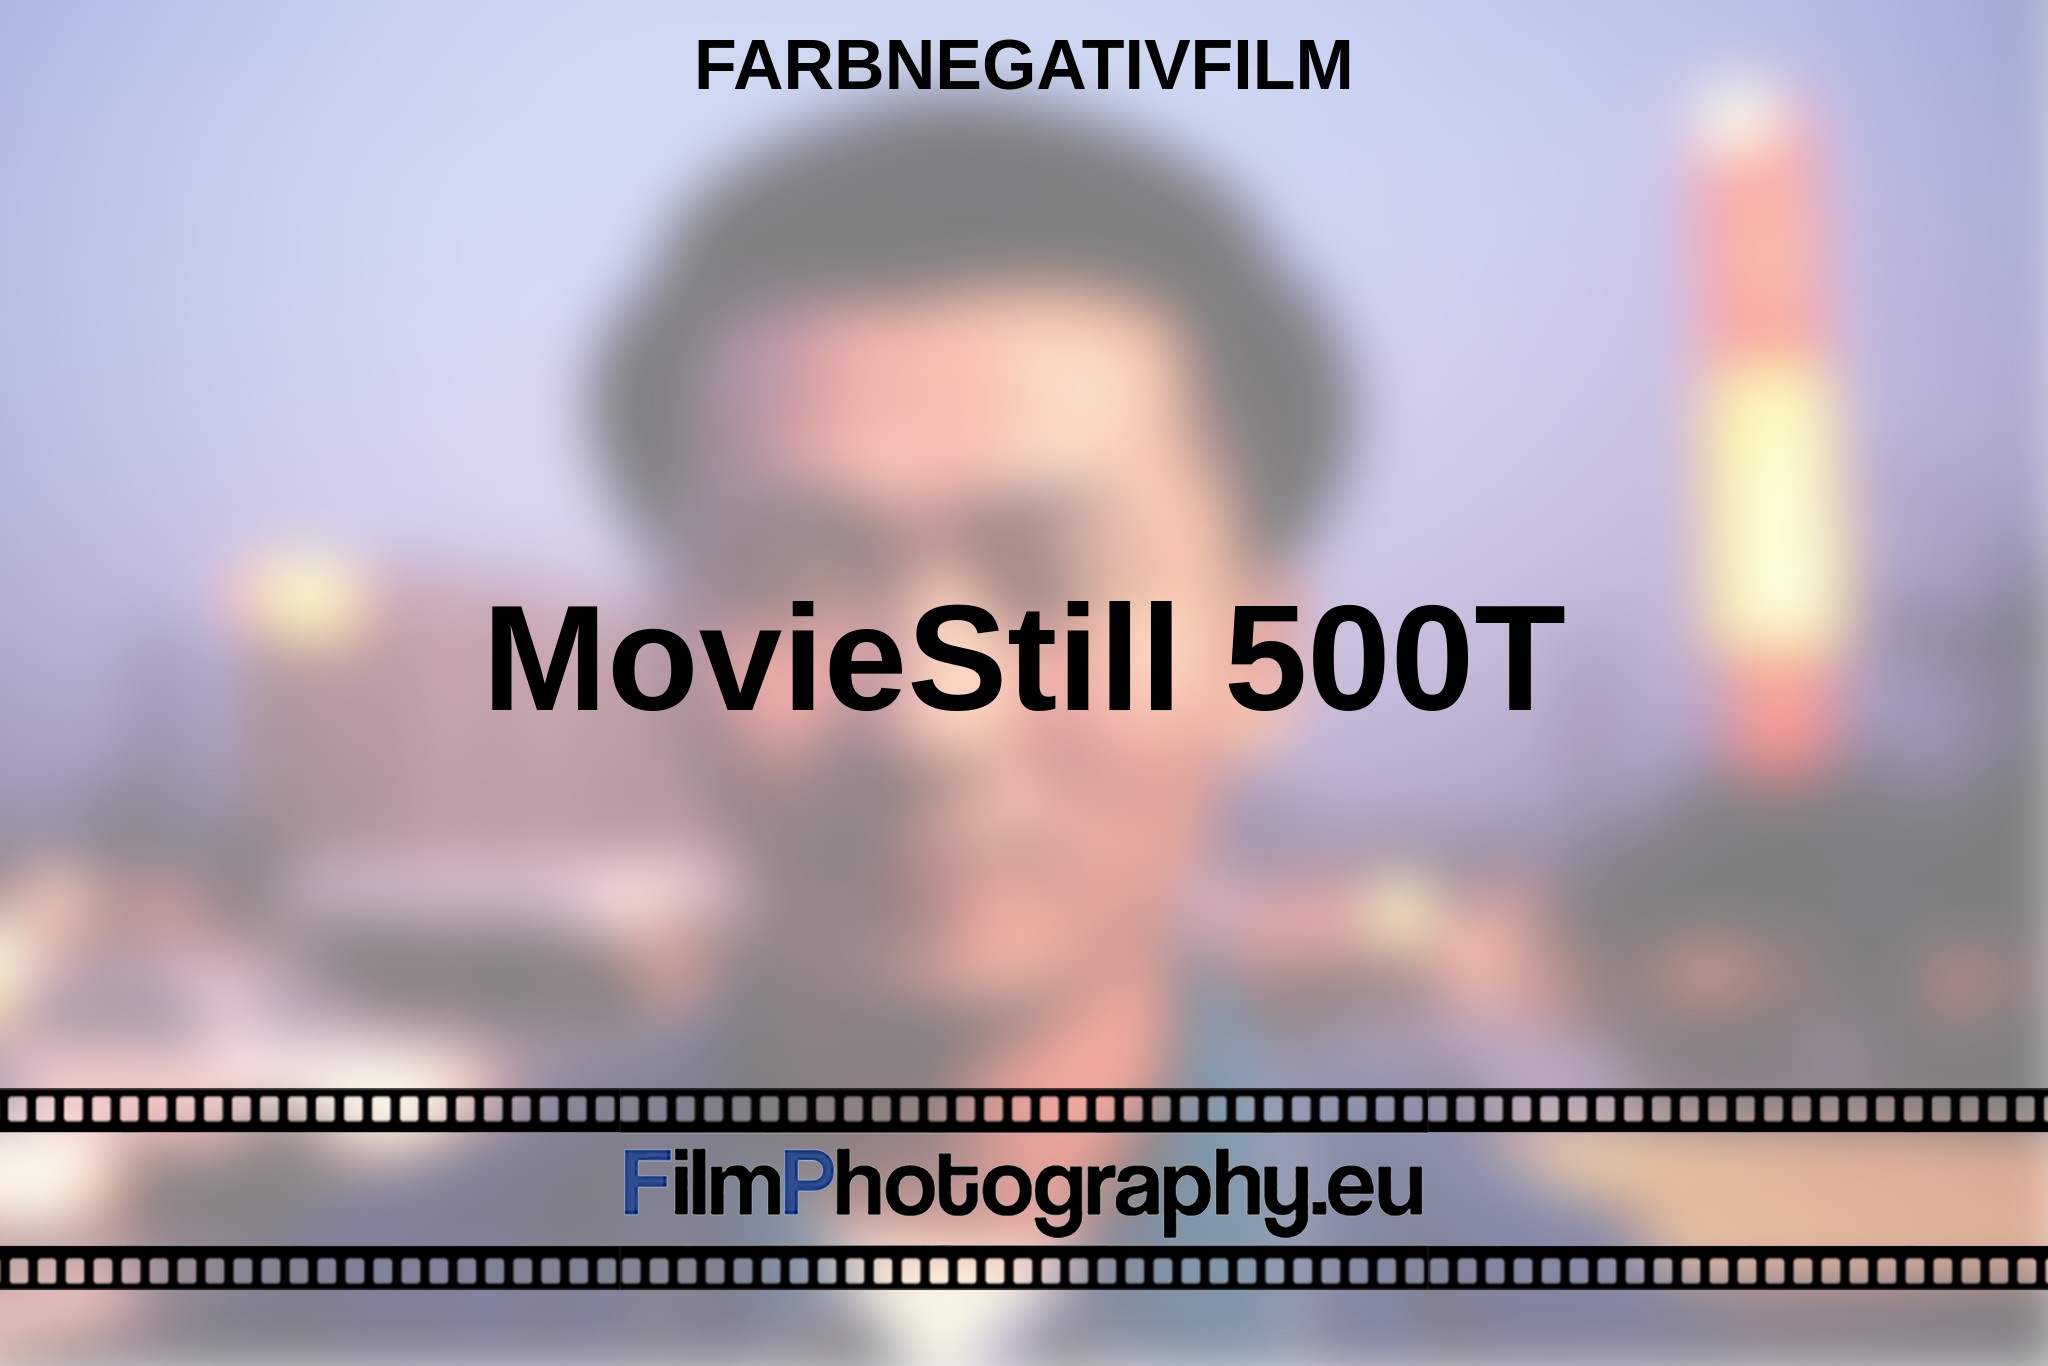 moviestill-500t-farbnegativfilm-bnv.jpg